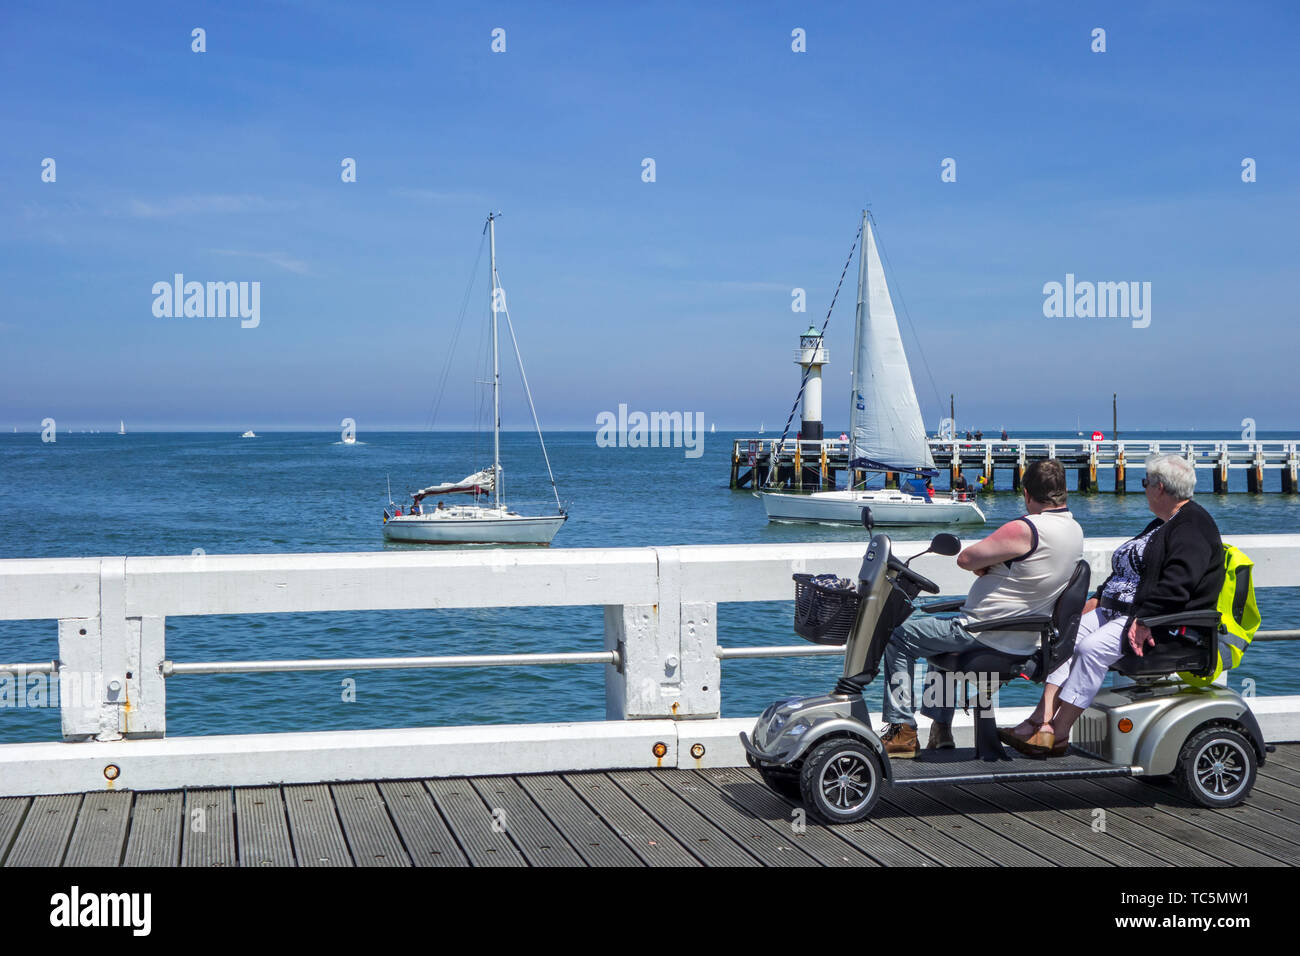 Behinderte Rentner in Duo zwei Person scooterverleih Segelboote beobachten auf See von Jetty im Seaside Resort im Sommer Stockfoto